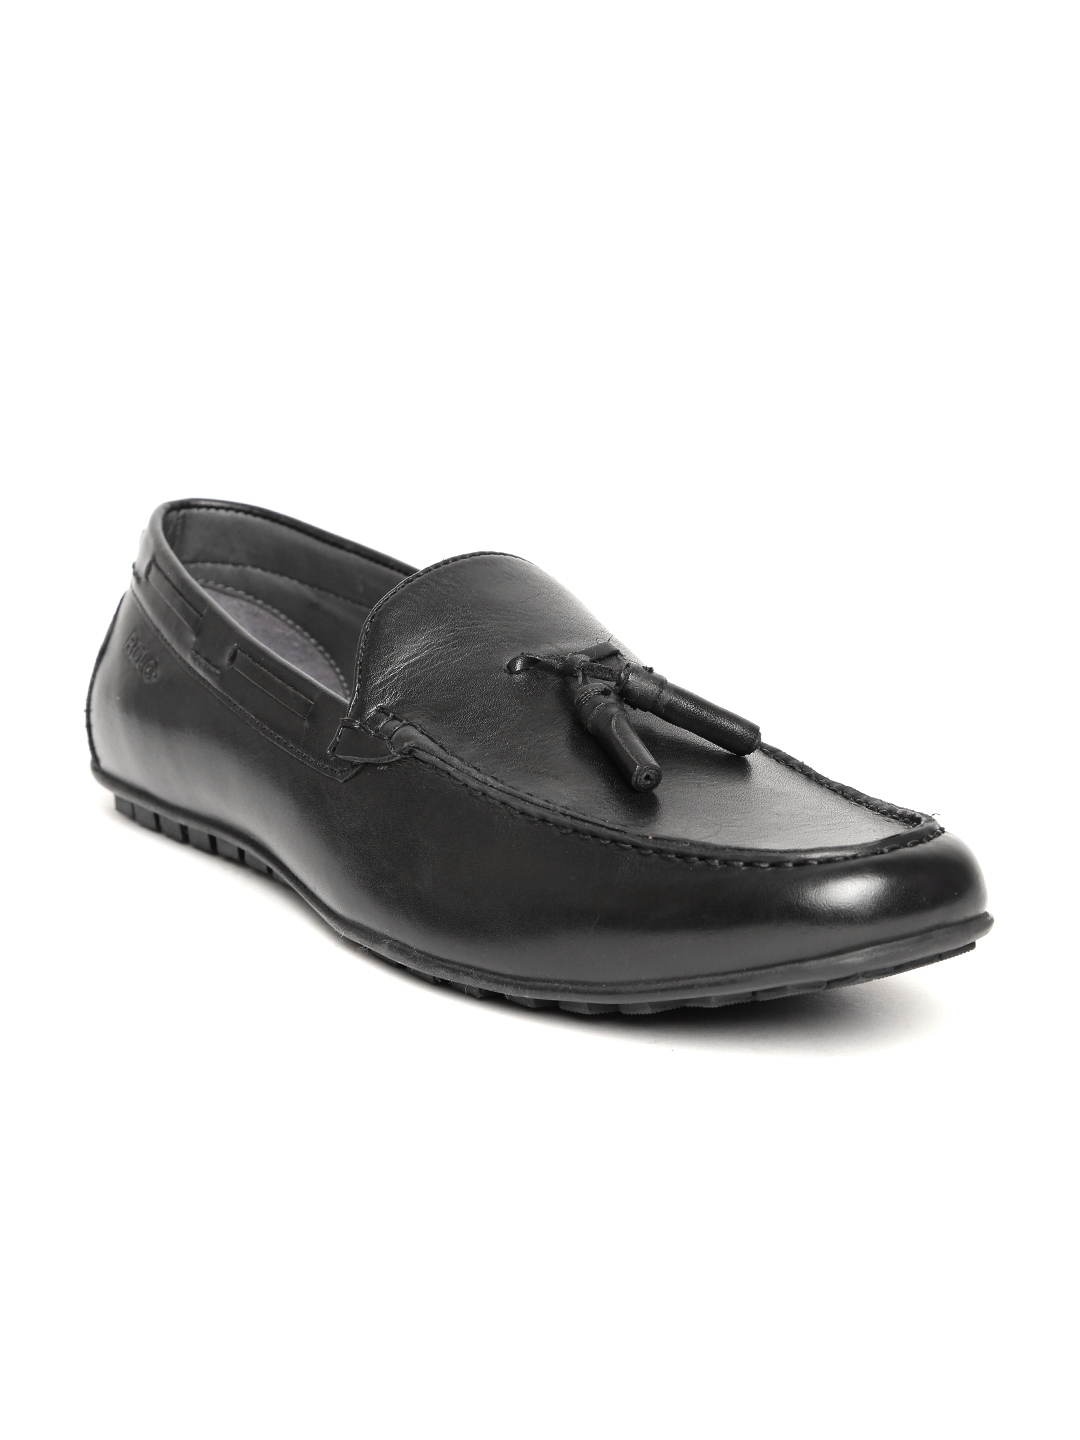 Buy Lee Cooper Men Black Solid Tassel Loafers - Casual Shoes for Men ...